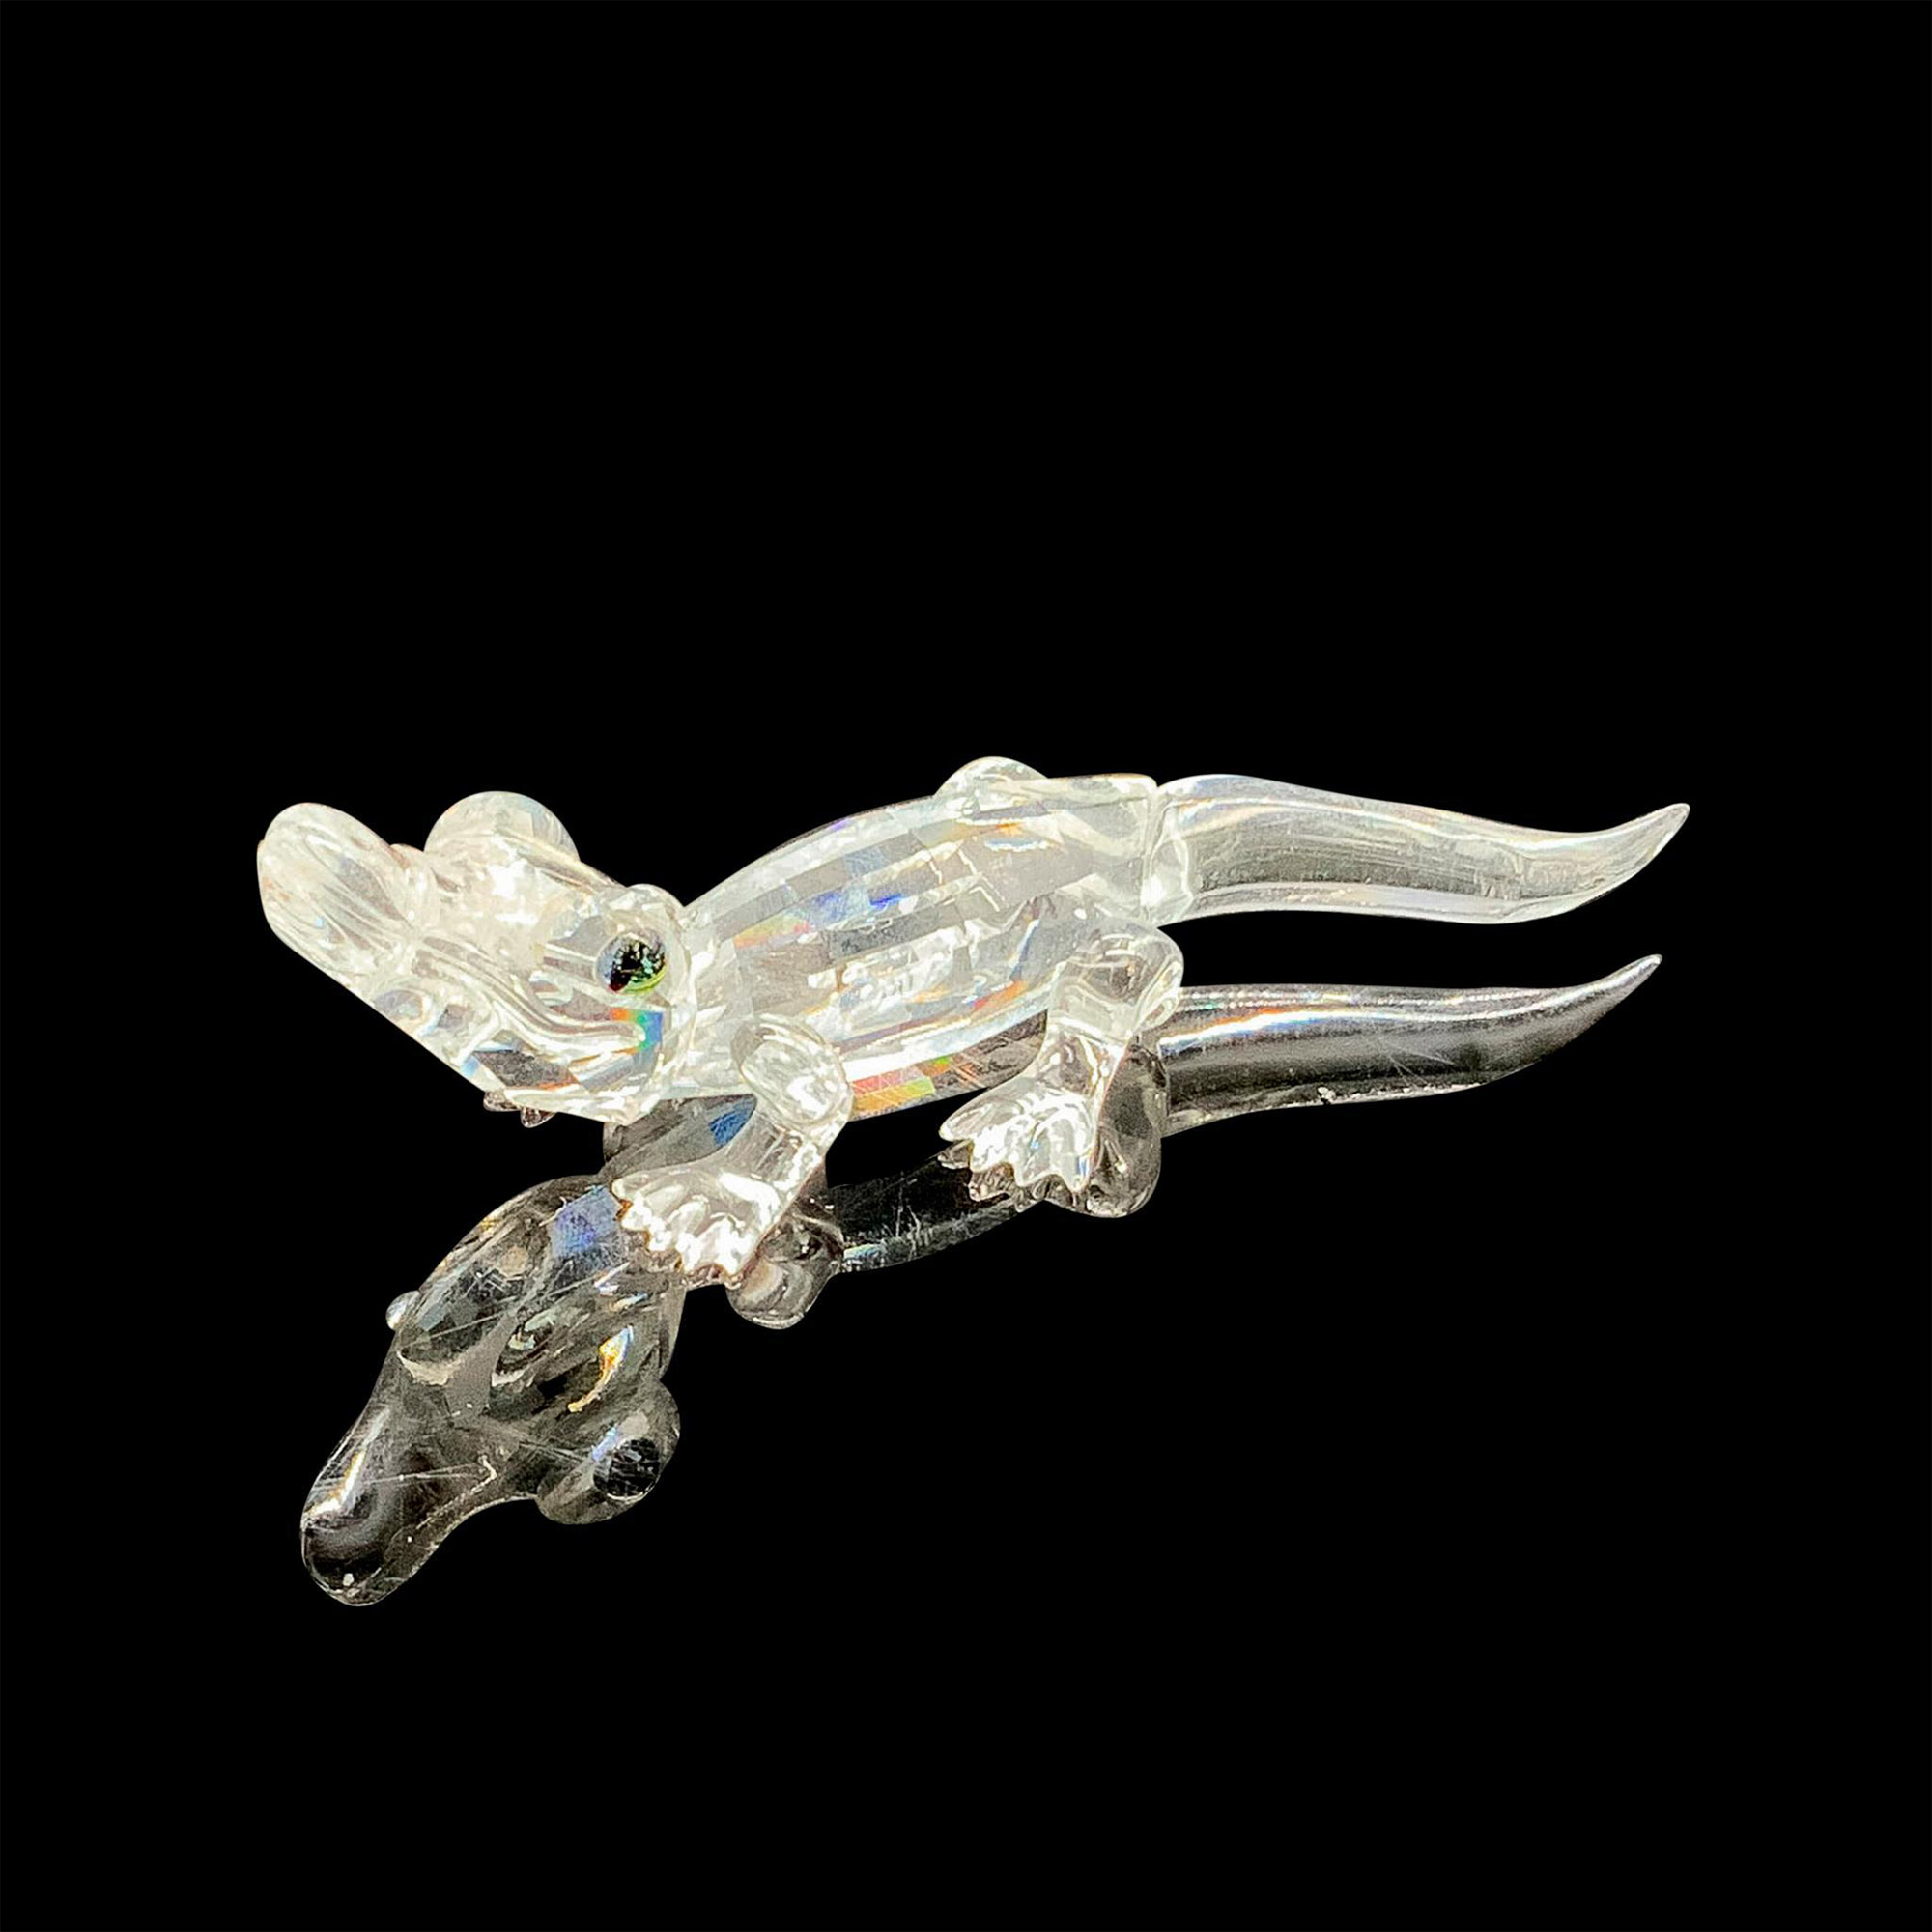 Swarovski Crystal Figurine, Mini Alligator - Image 2 of 4